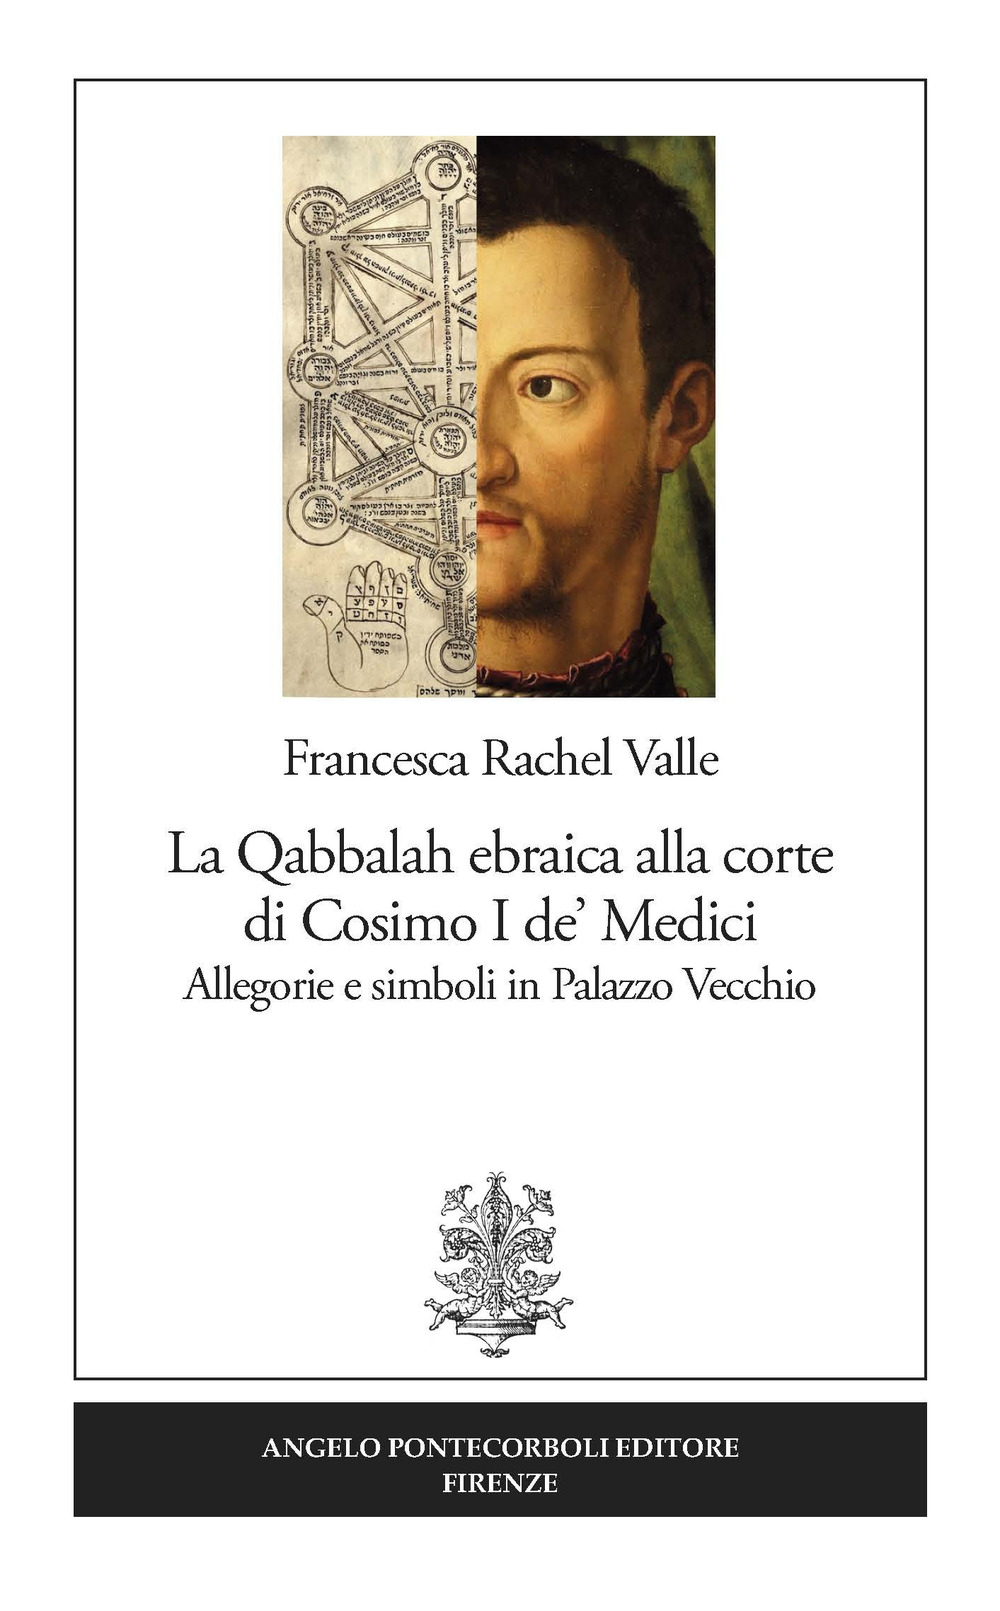 Image of La Qabbalah ebraica alla corte di Cosimo I de' Medici. Allegorie e simboli in Palazzo Vecchio